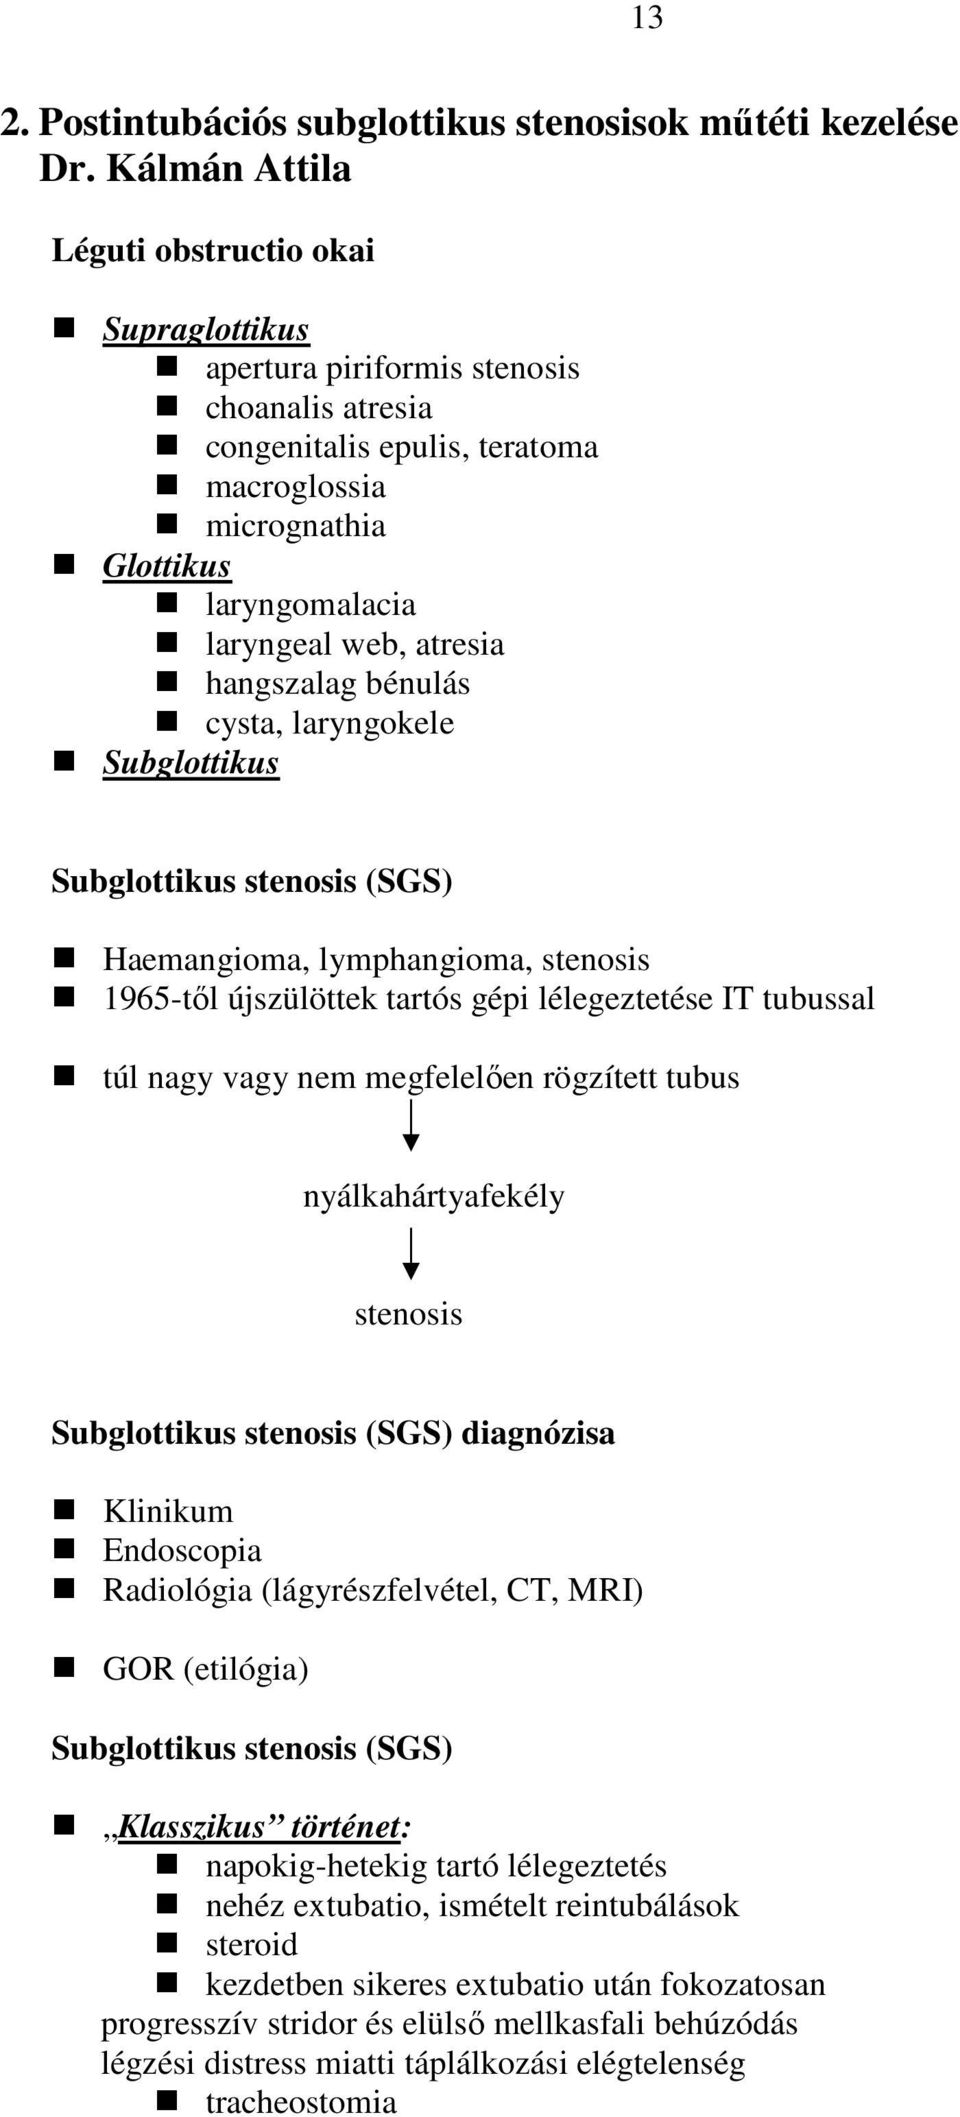 atresia hangszalag bénulás cysta, laryngokele Subglottikus Subglottikus stenosis (SGS) Haemangioma, lymphangioma, stenosis 1965-tıl újszülöttek tartós gépi lélegeztetése IT tubussal túl nagy vagy nem